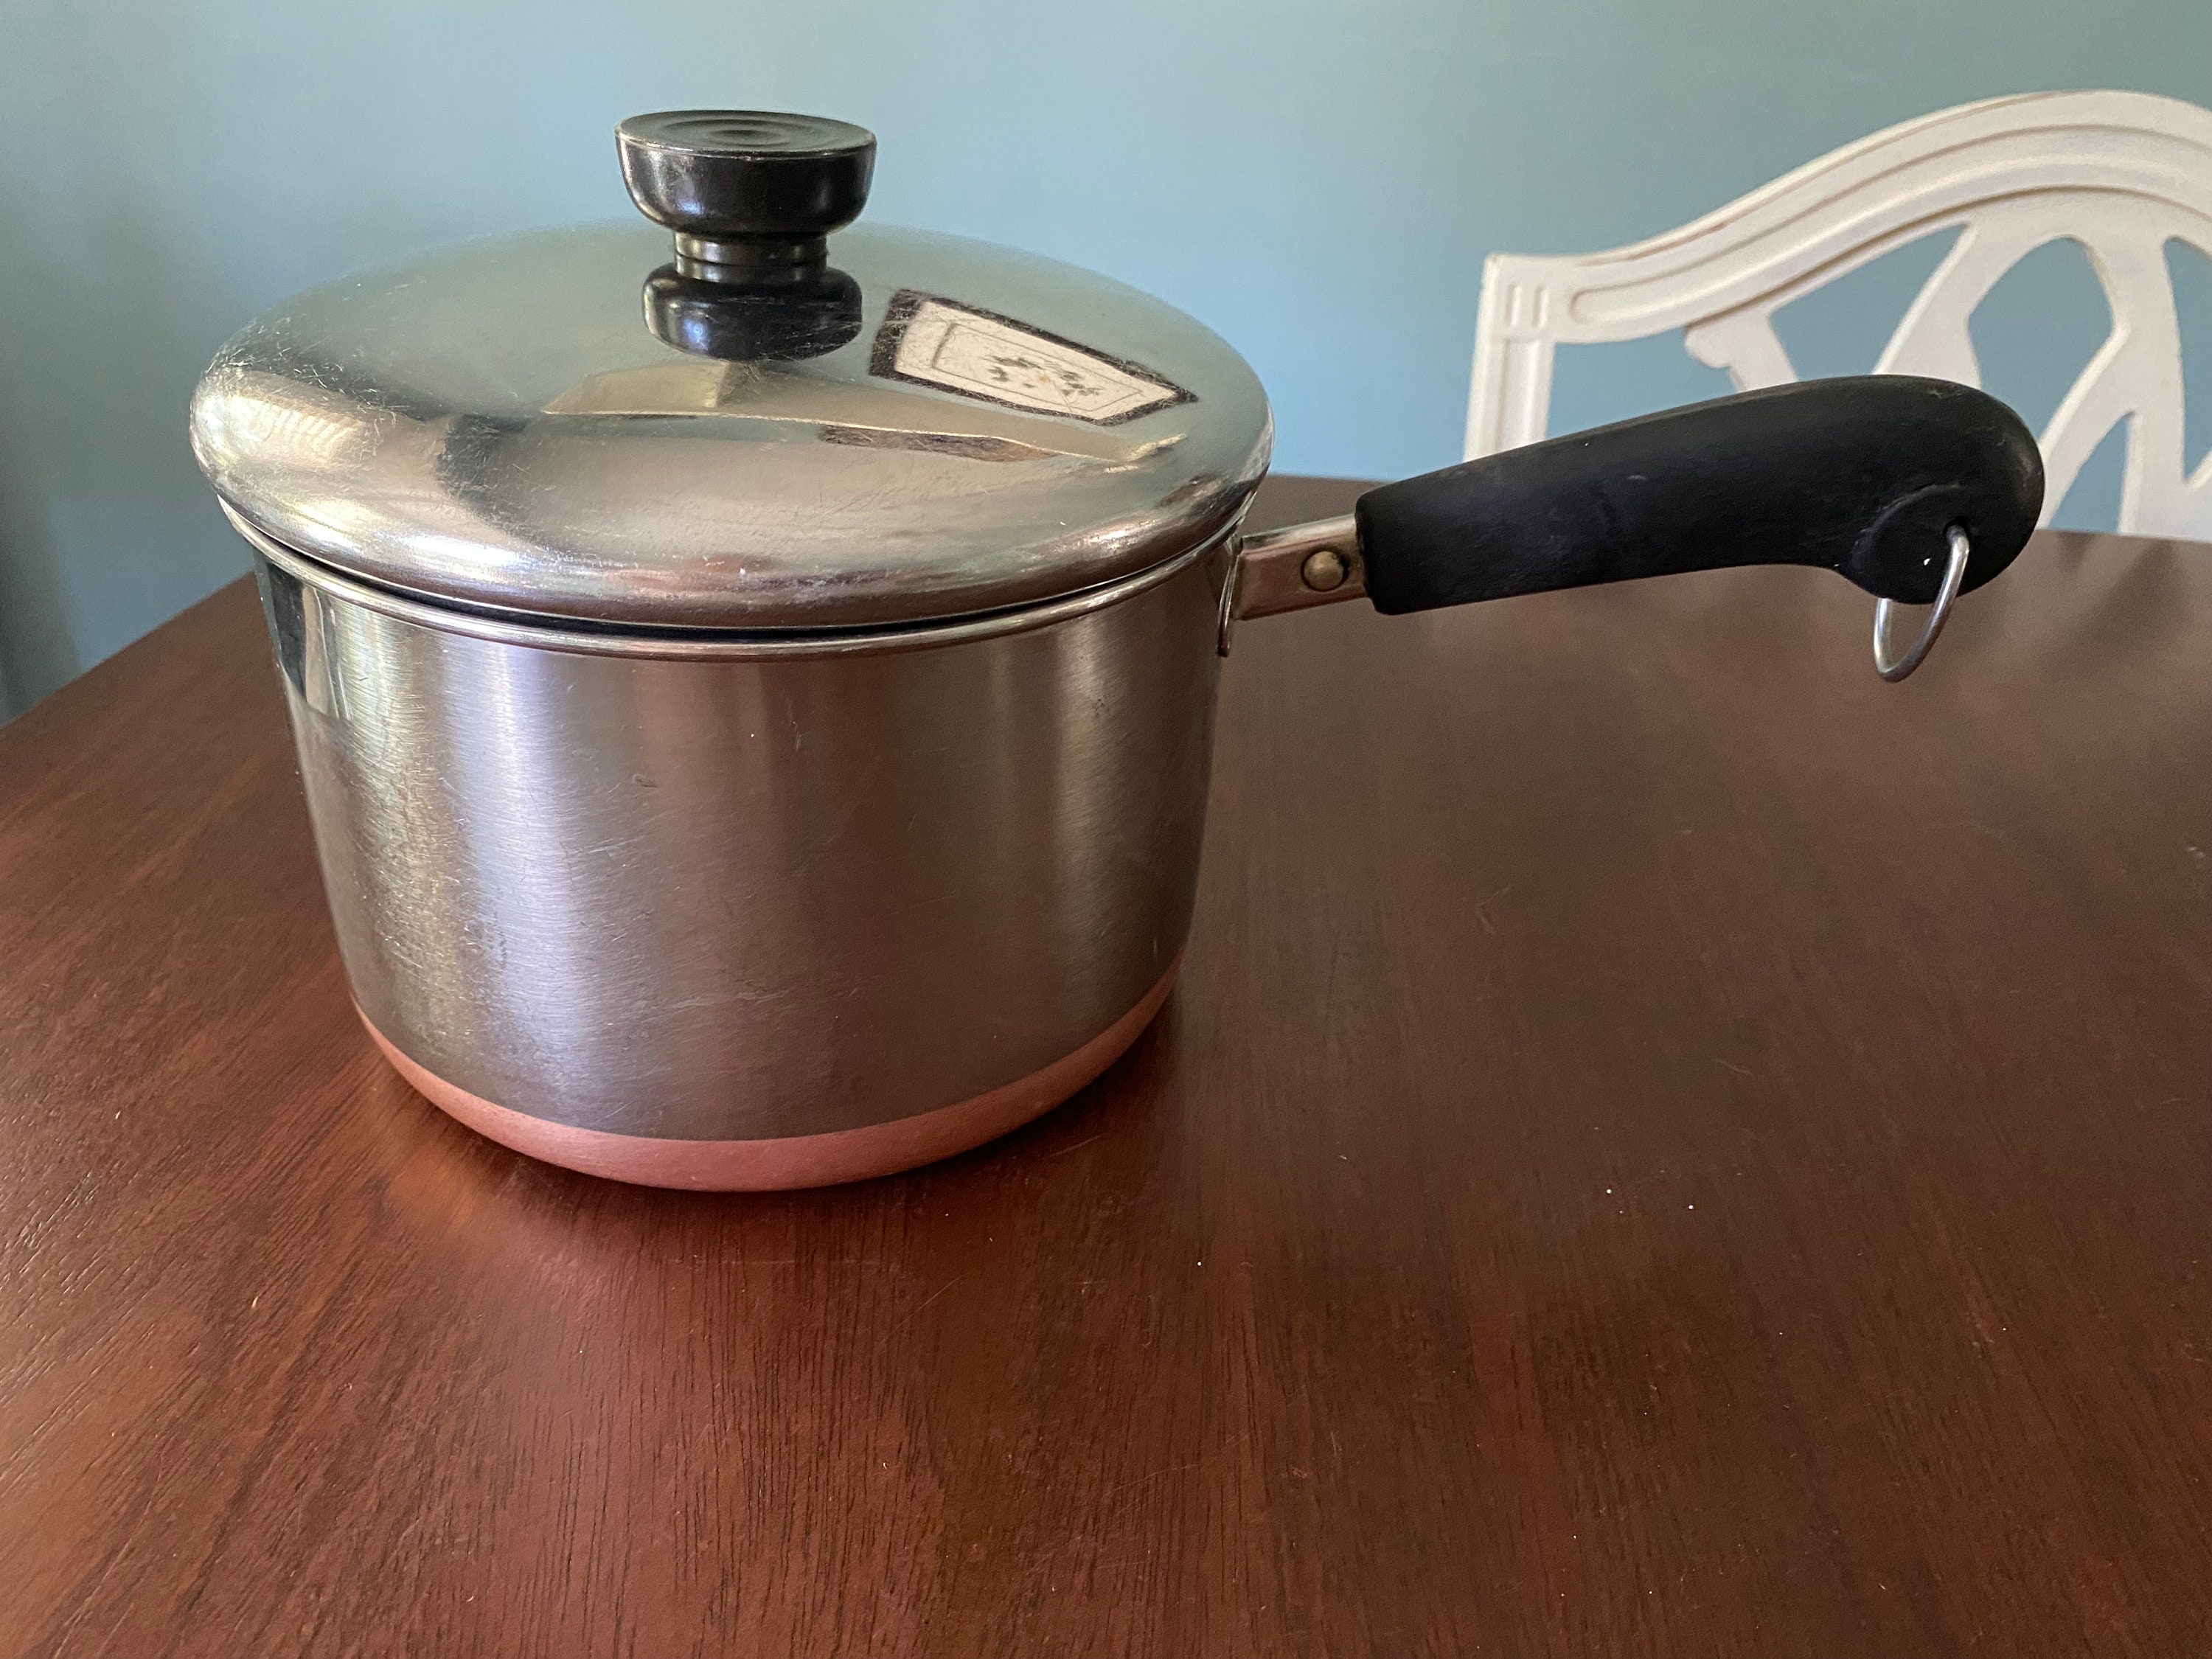 Revere Ware Vintage Copper Bottom Set or Sauce Pans, Stock Pots Replacement  Pieces 